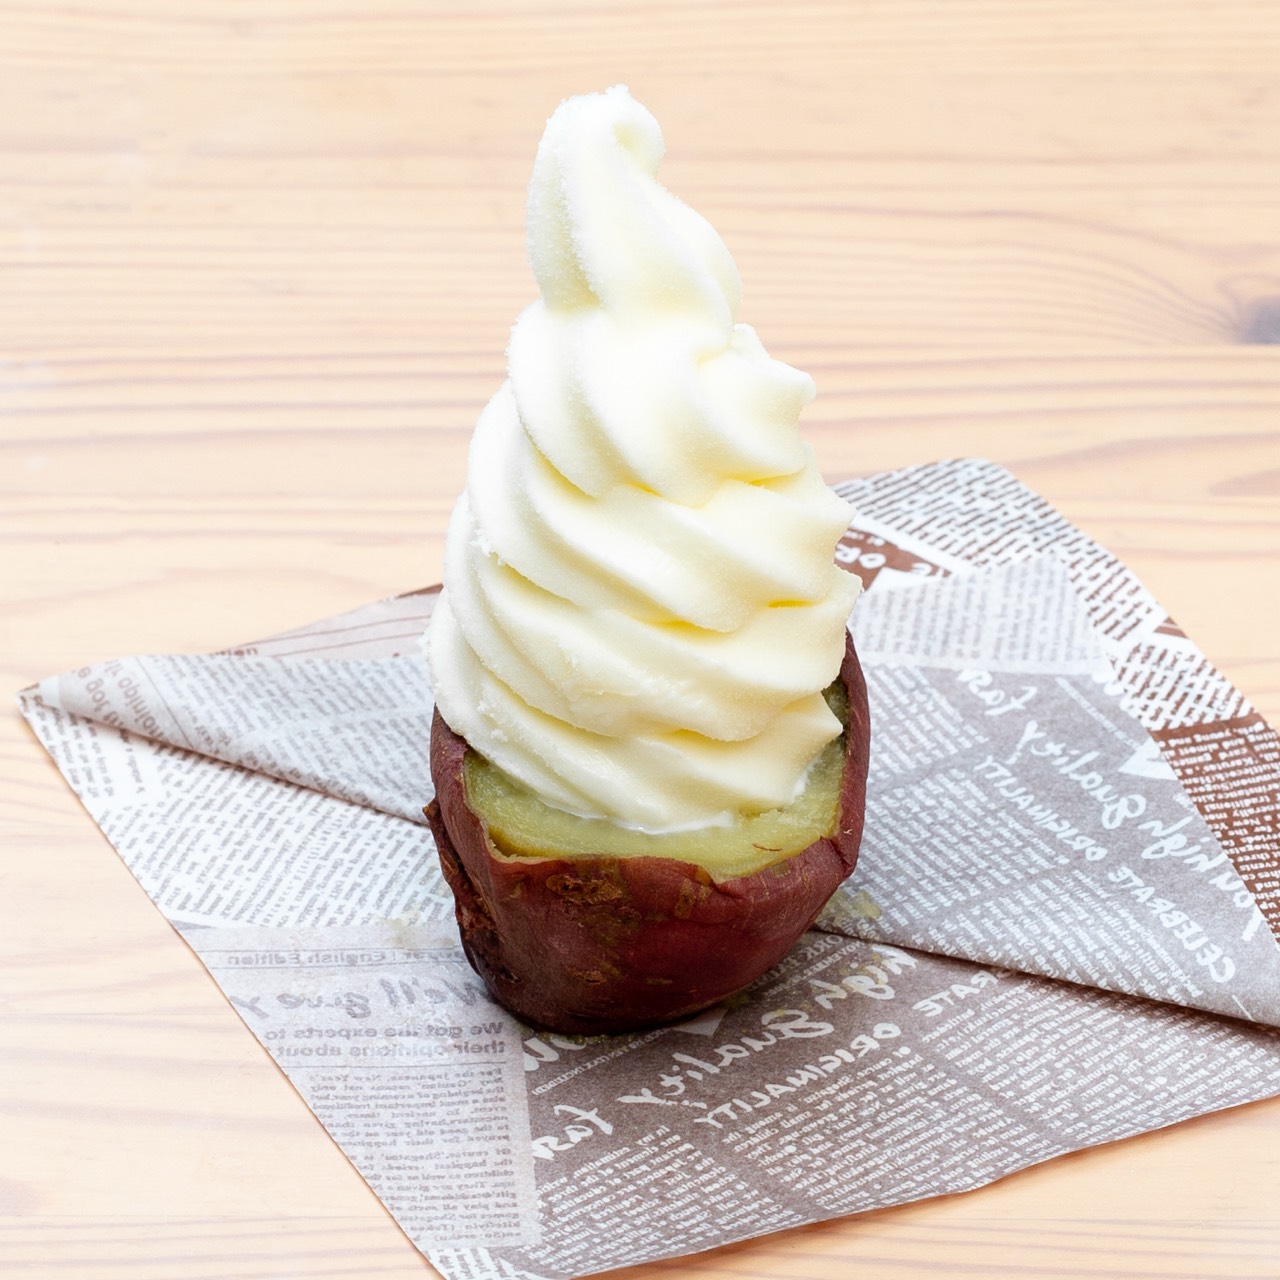 お取り寄せ(楽天) マツコ・デラックスさんも絶賛★ 焼き芋ソフトクリーム「イモぽんソフト」4個入 焼き芋 アイスクリーム 価格3,680円 (税込)